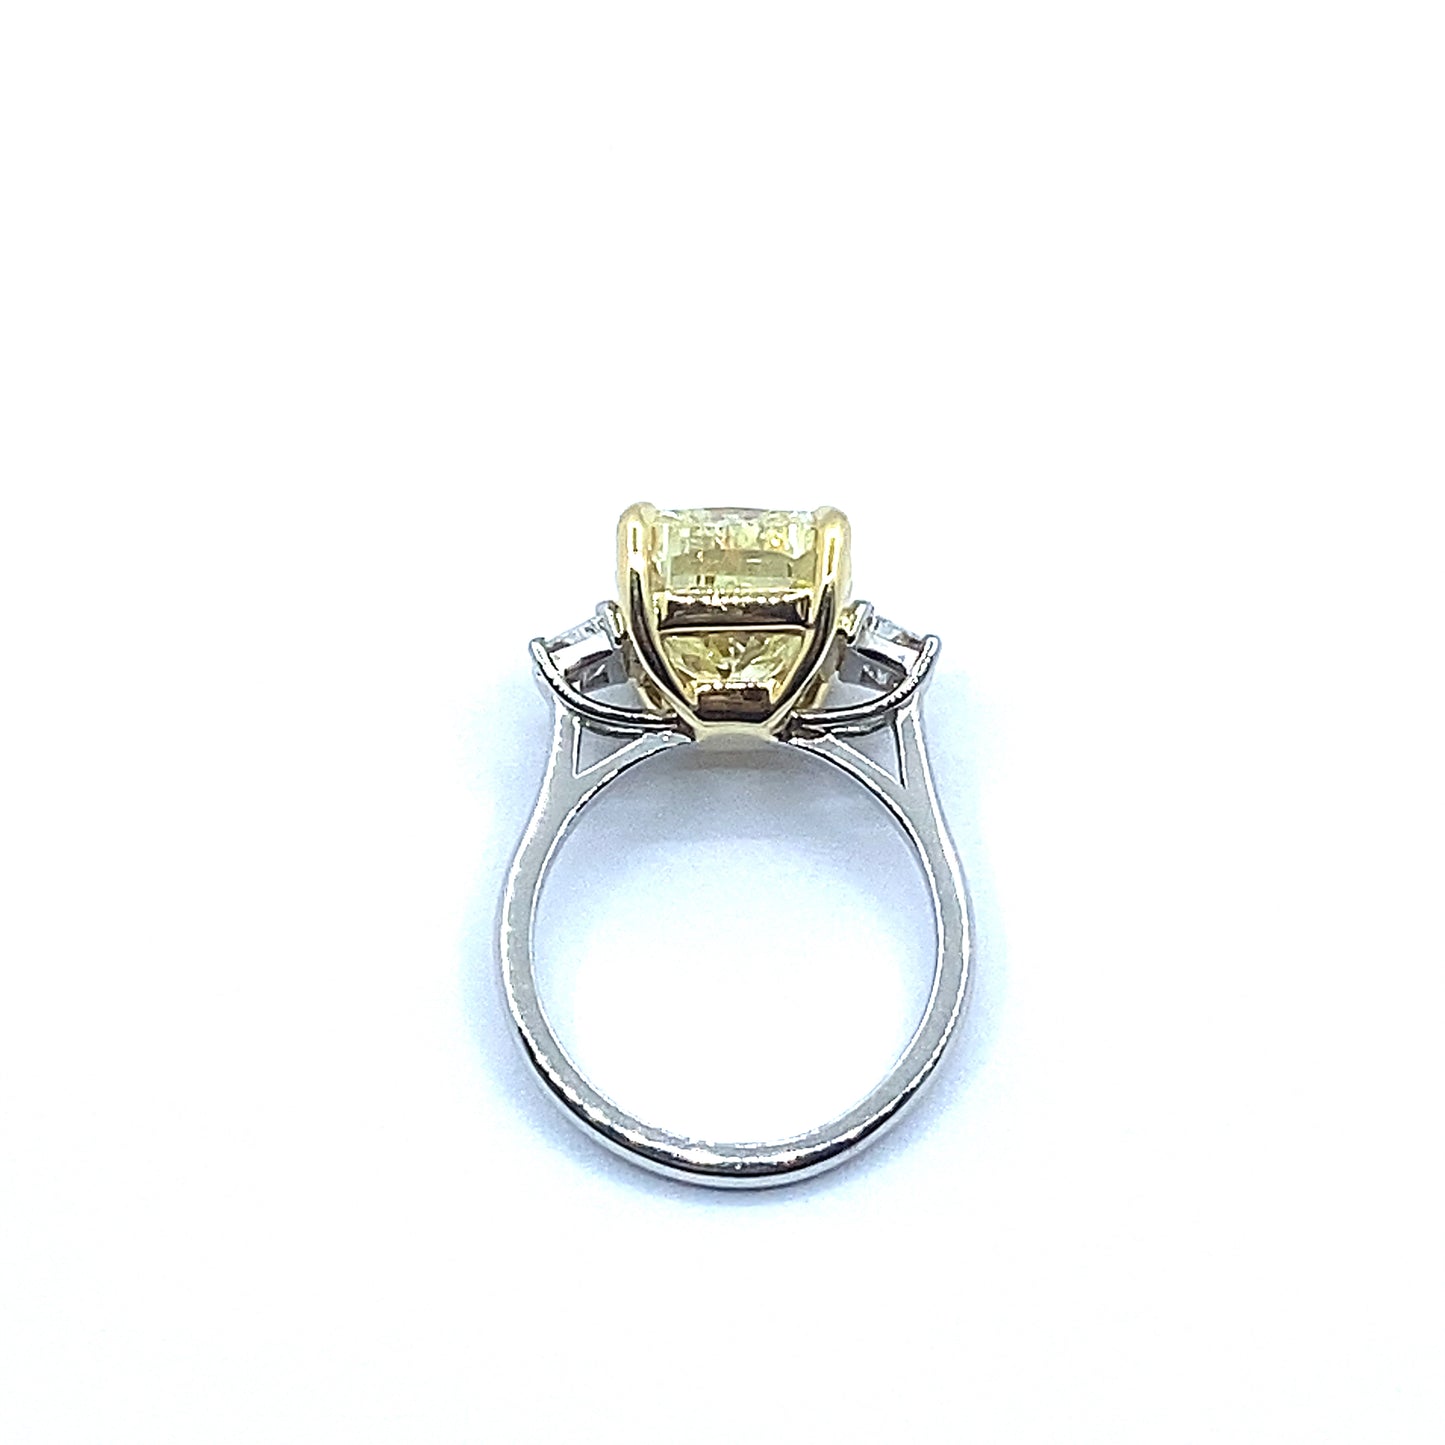 7.54ct Yellow Cushion Cut Diamond with Trapeze Cut Diamond Side Stone Ring